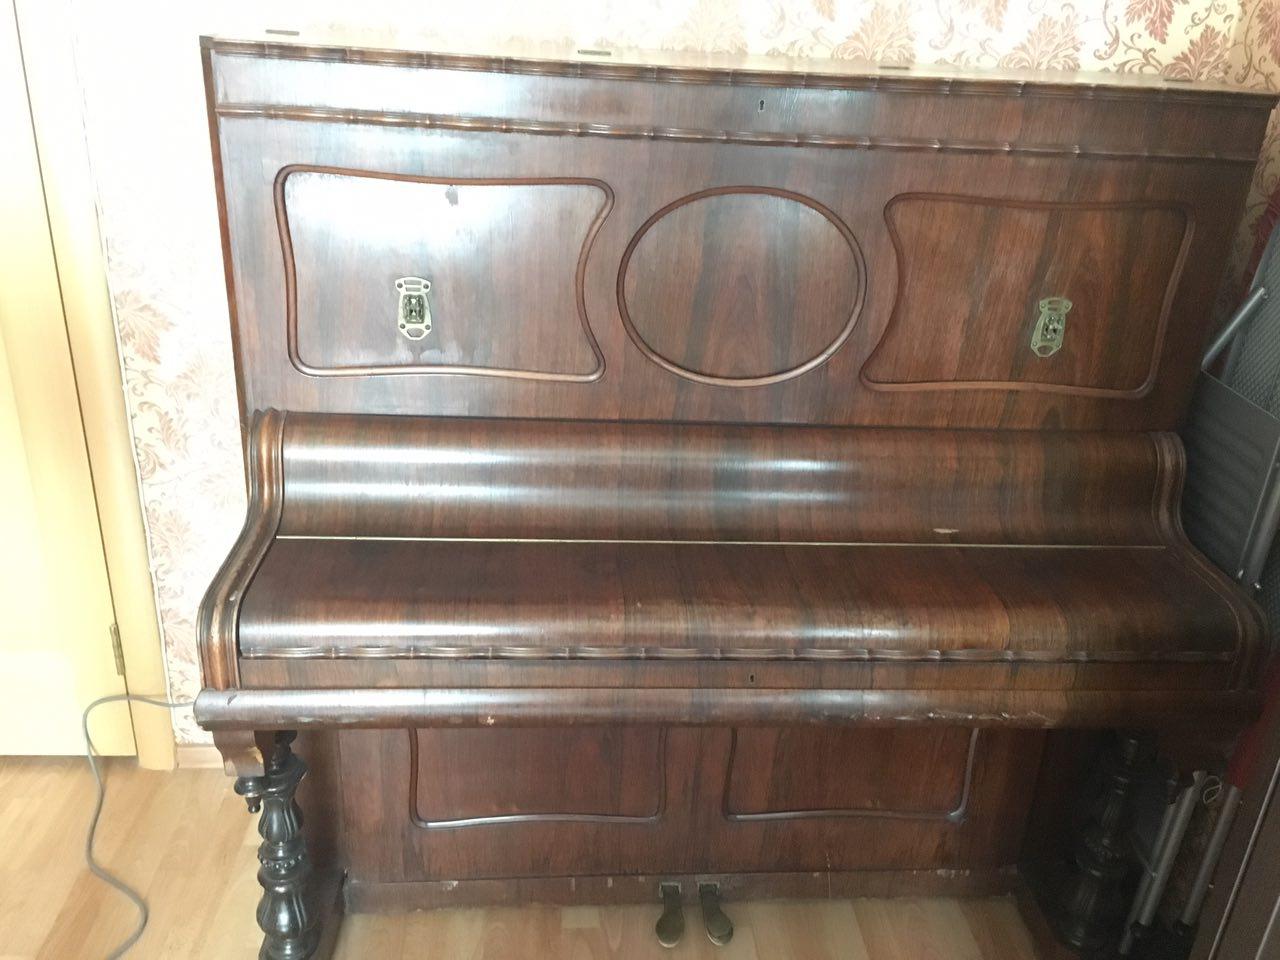 Старинное название фортепиано